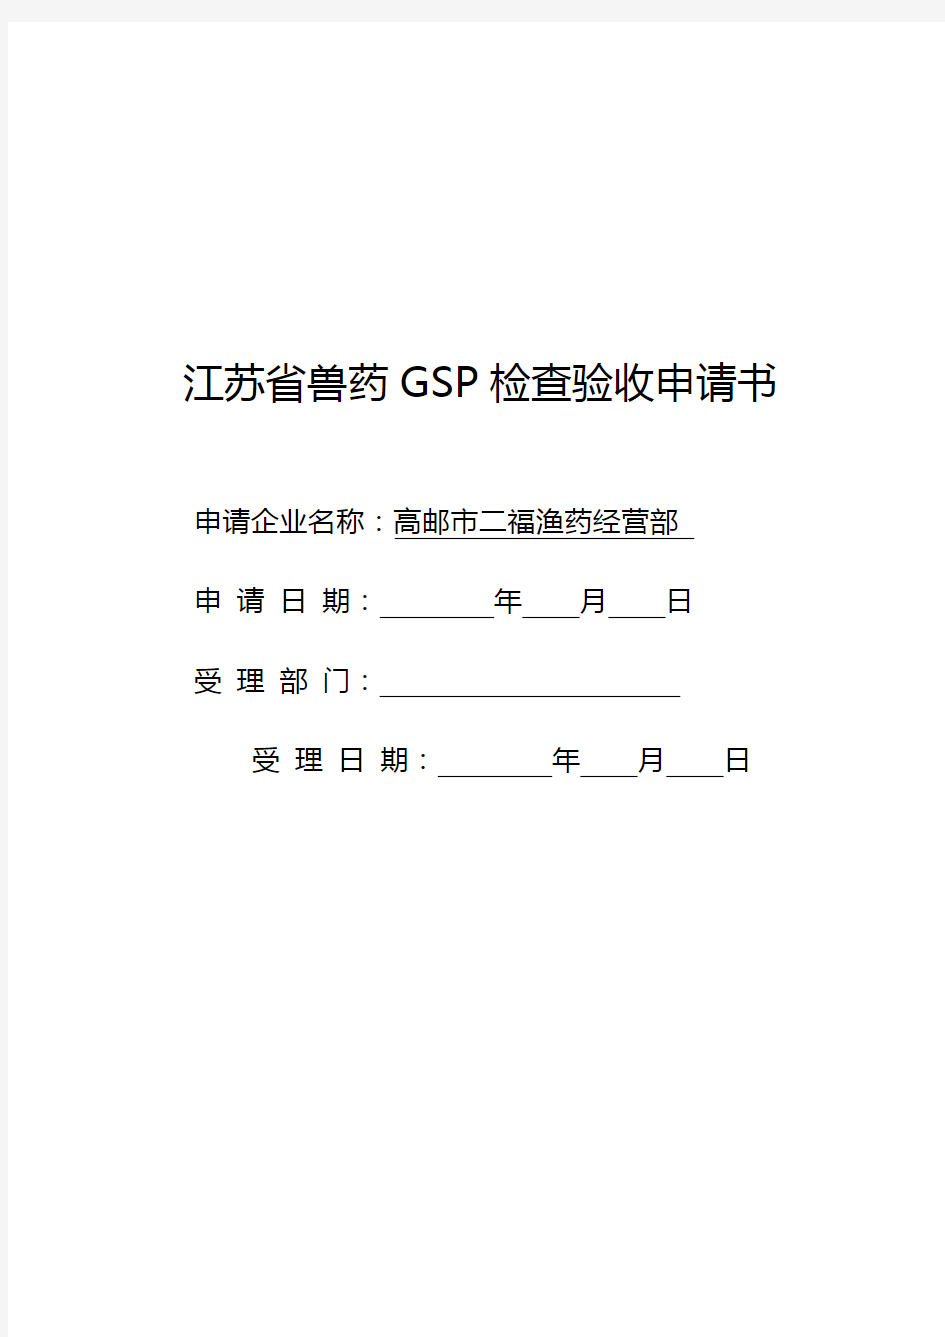 江苏省兽药GSP检查验收申请书教案资料